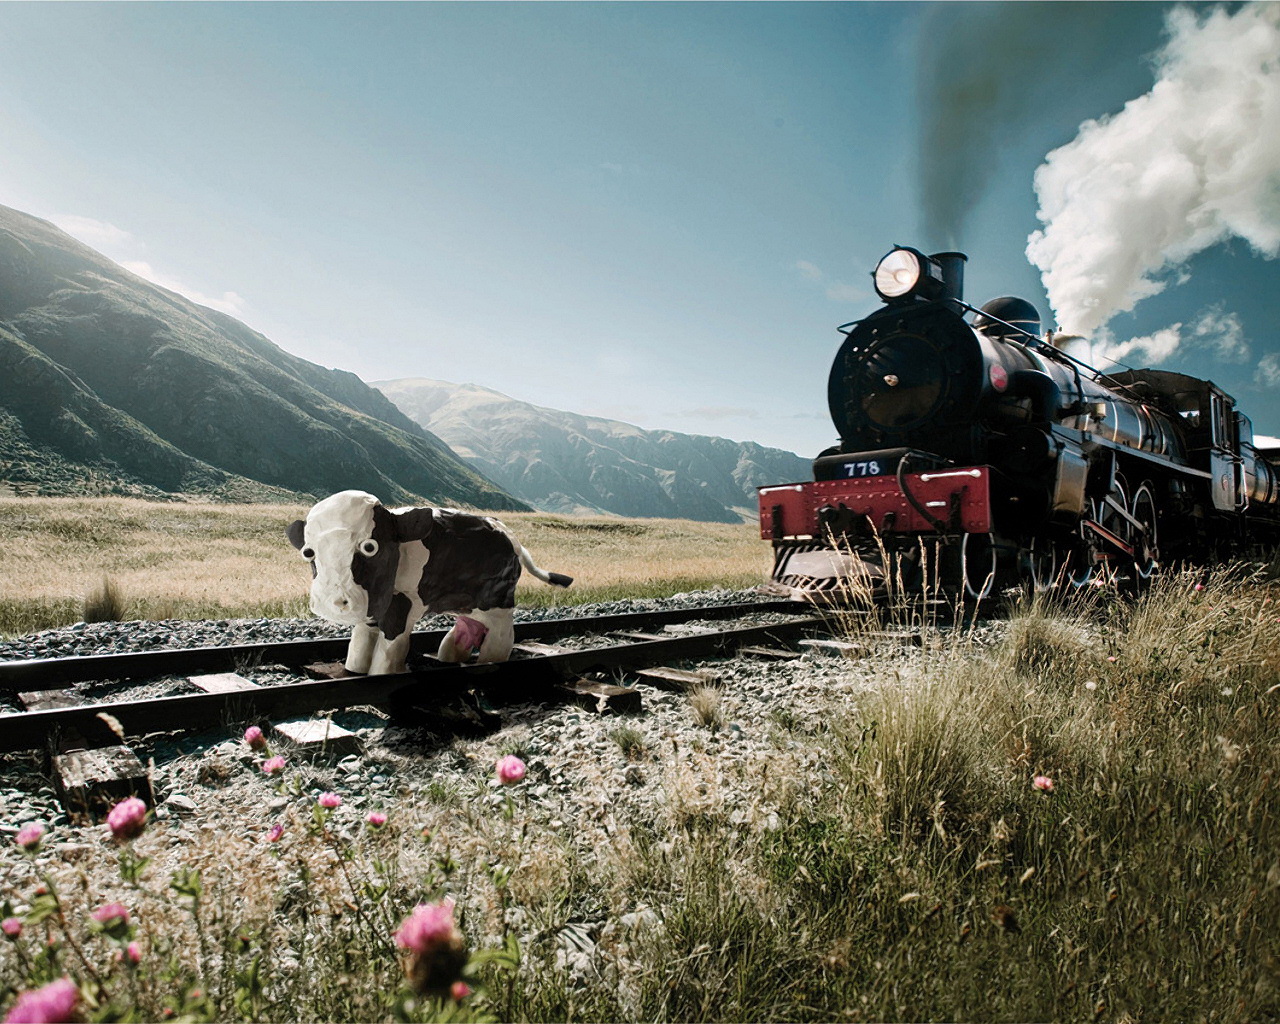 بک گراند گوگولی ساختگی از بچه گاو زیبا در مسیر ریل قطار